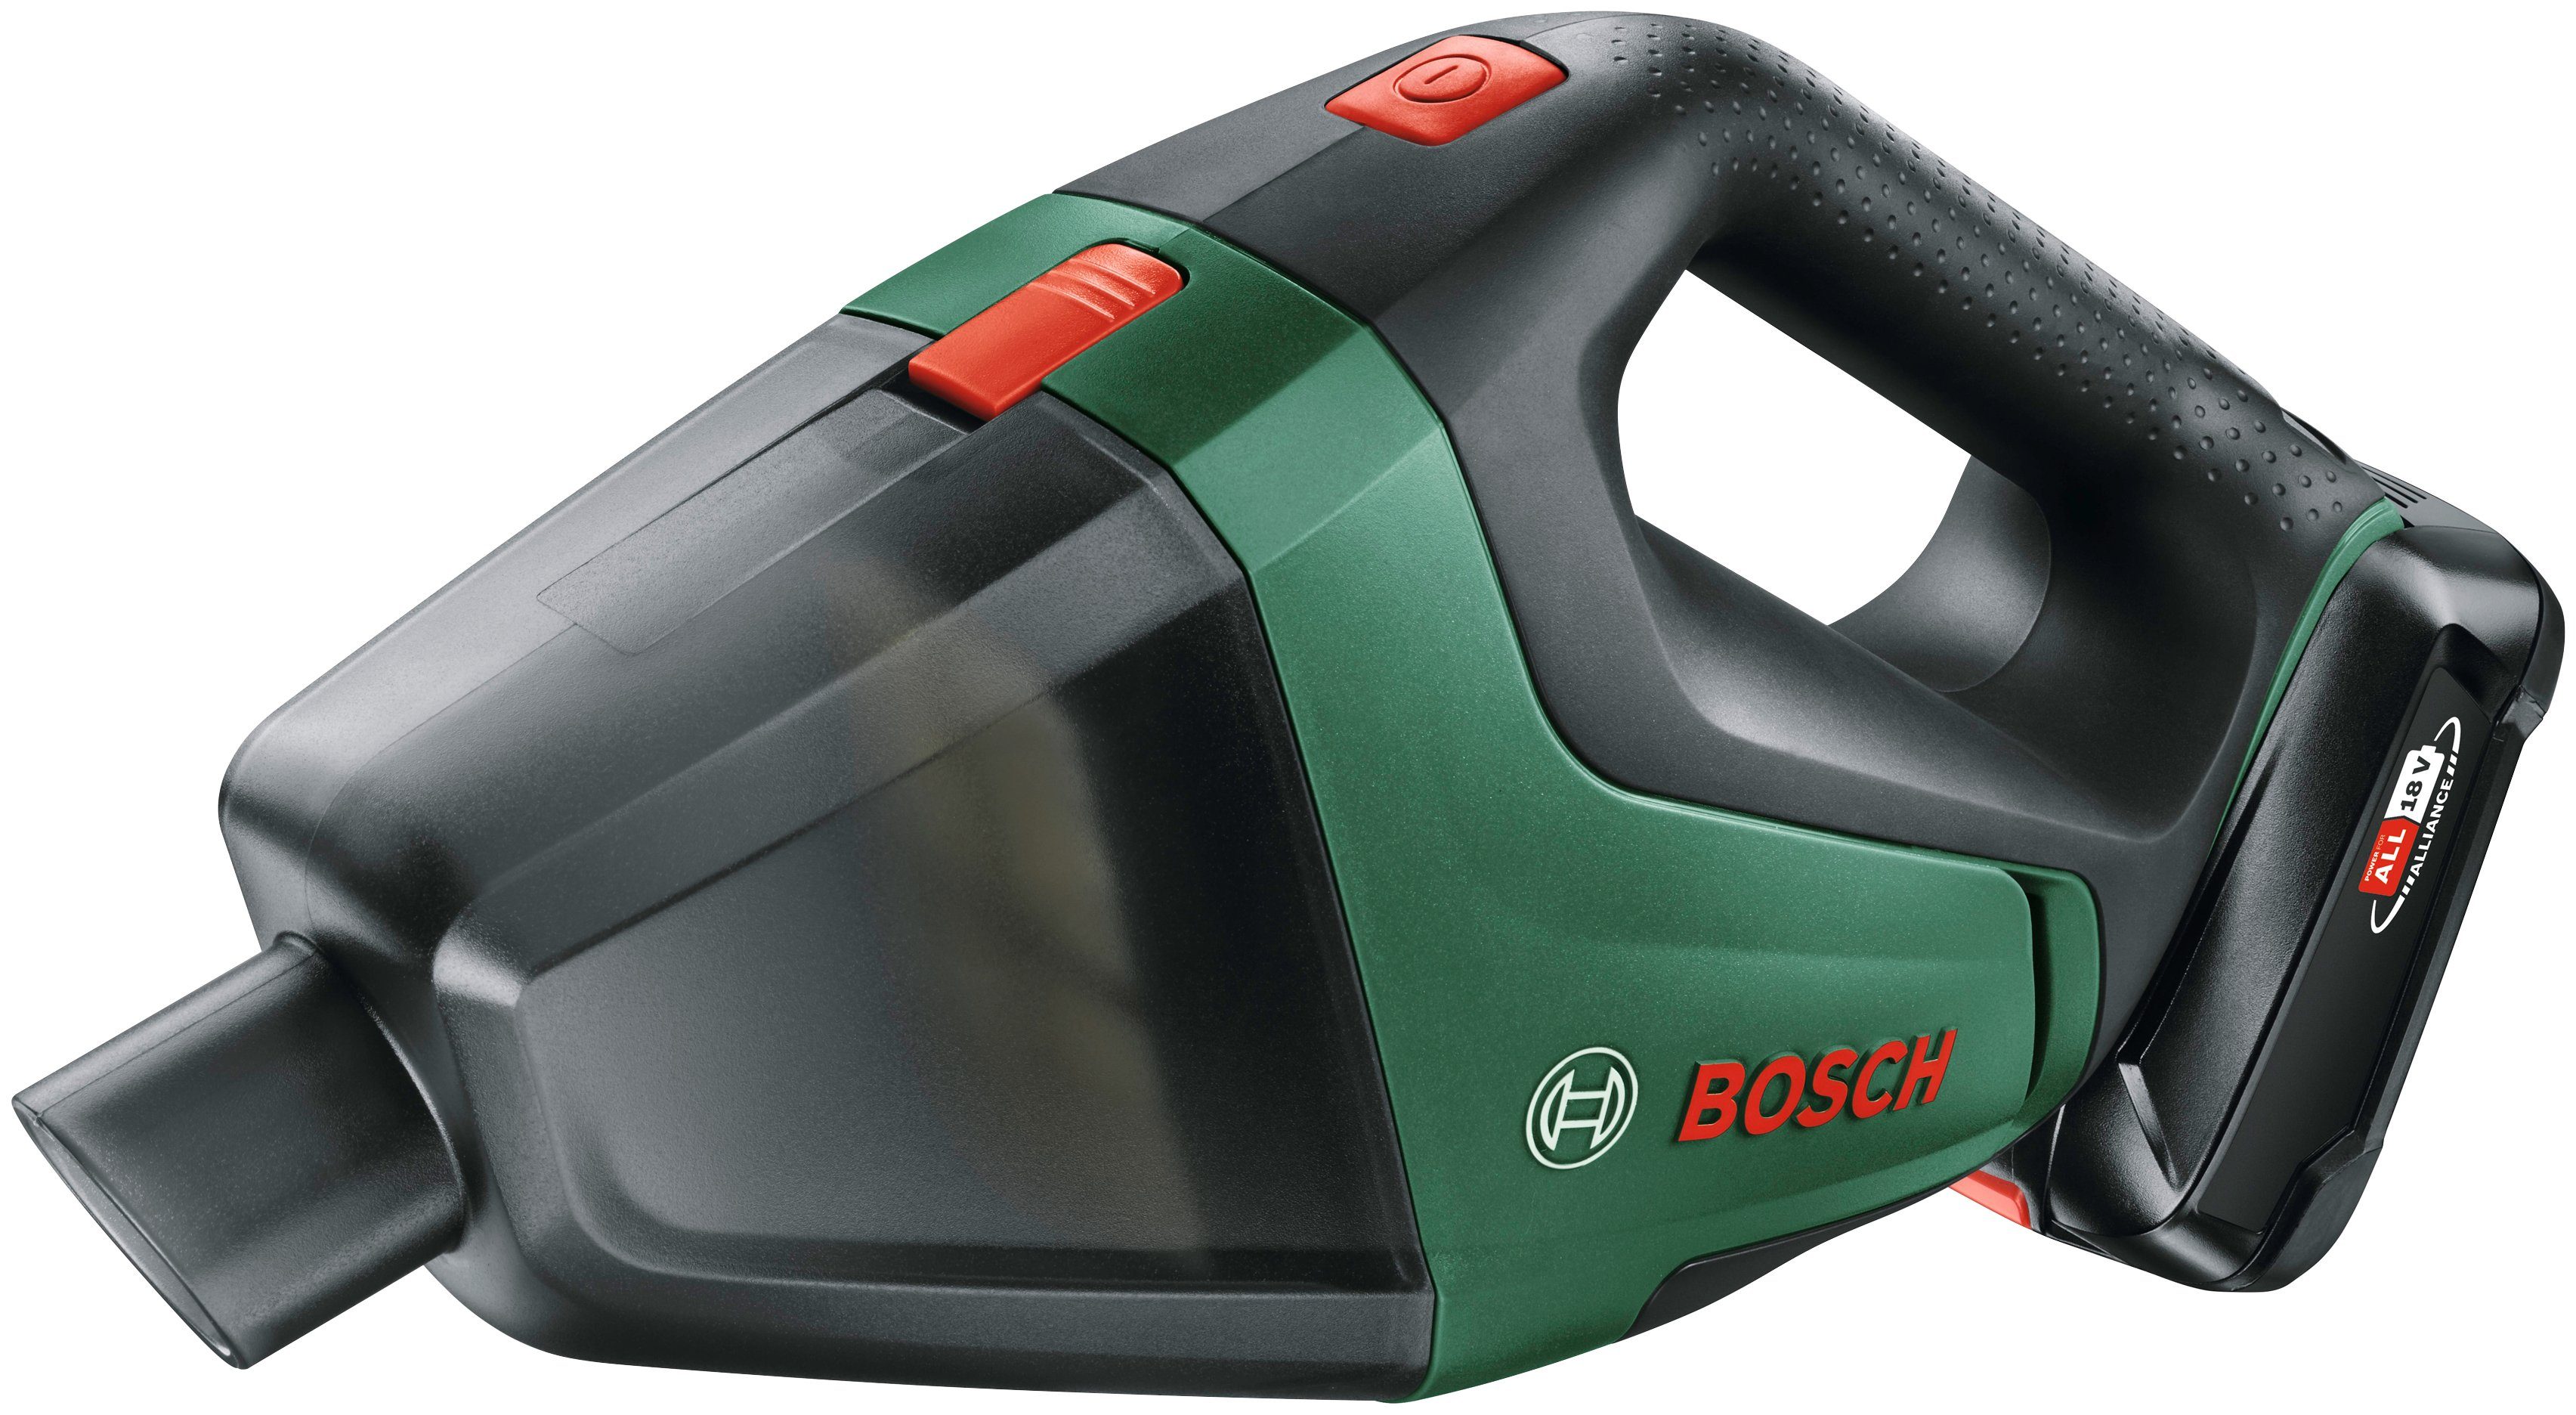 Bosch Home Ladegerät, & 18, UniversalVac Garden mm beutellos, Maße: 335x100x175 und Akku Akku-Handstaubsauger inkl